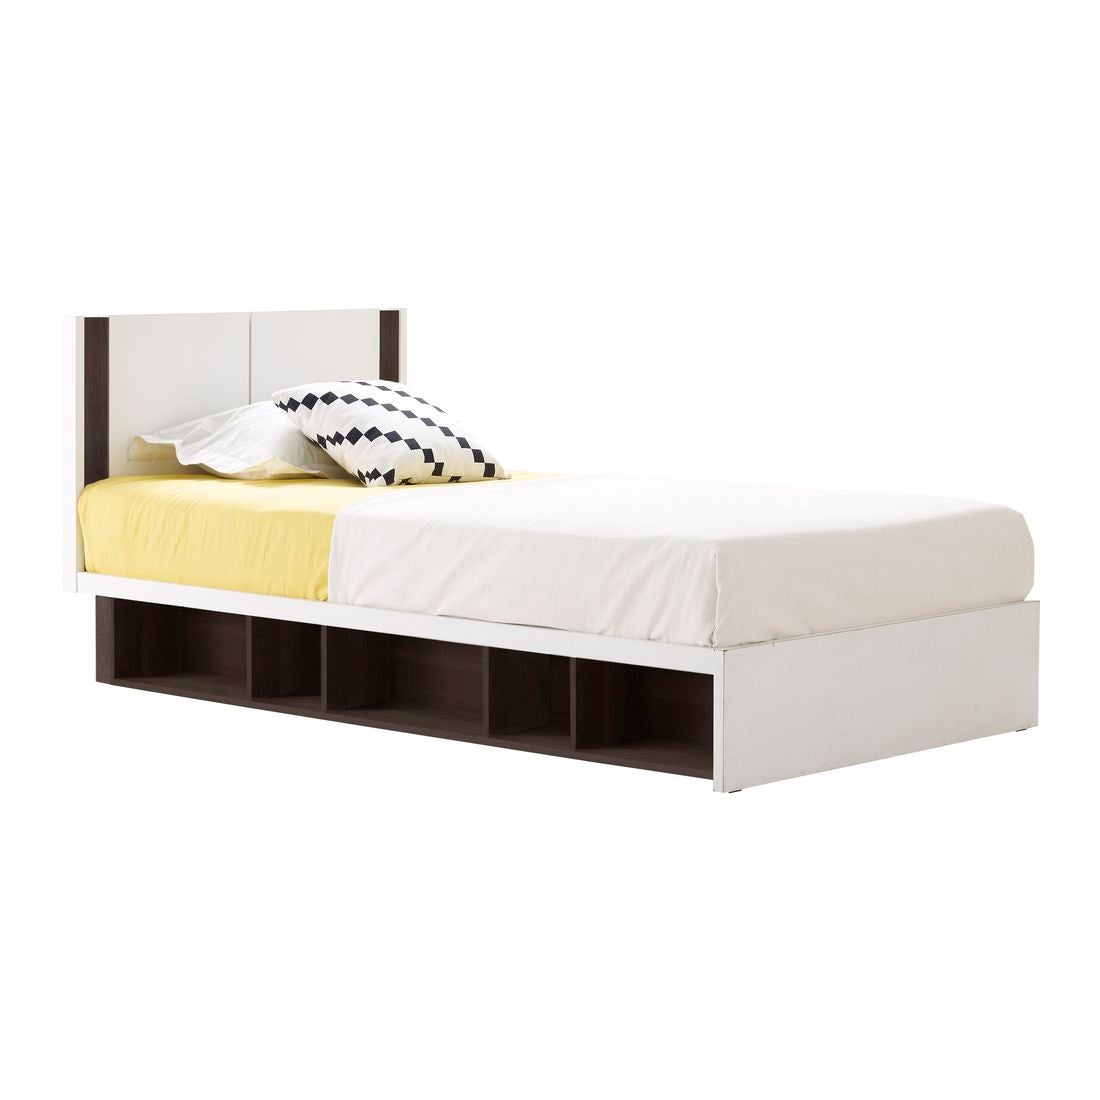 ชุดห้องนอน เตียง รุ่น Patinal สีสีเข้มลายไม้ธรรมชาติ-SB Design Square